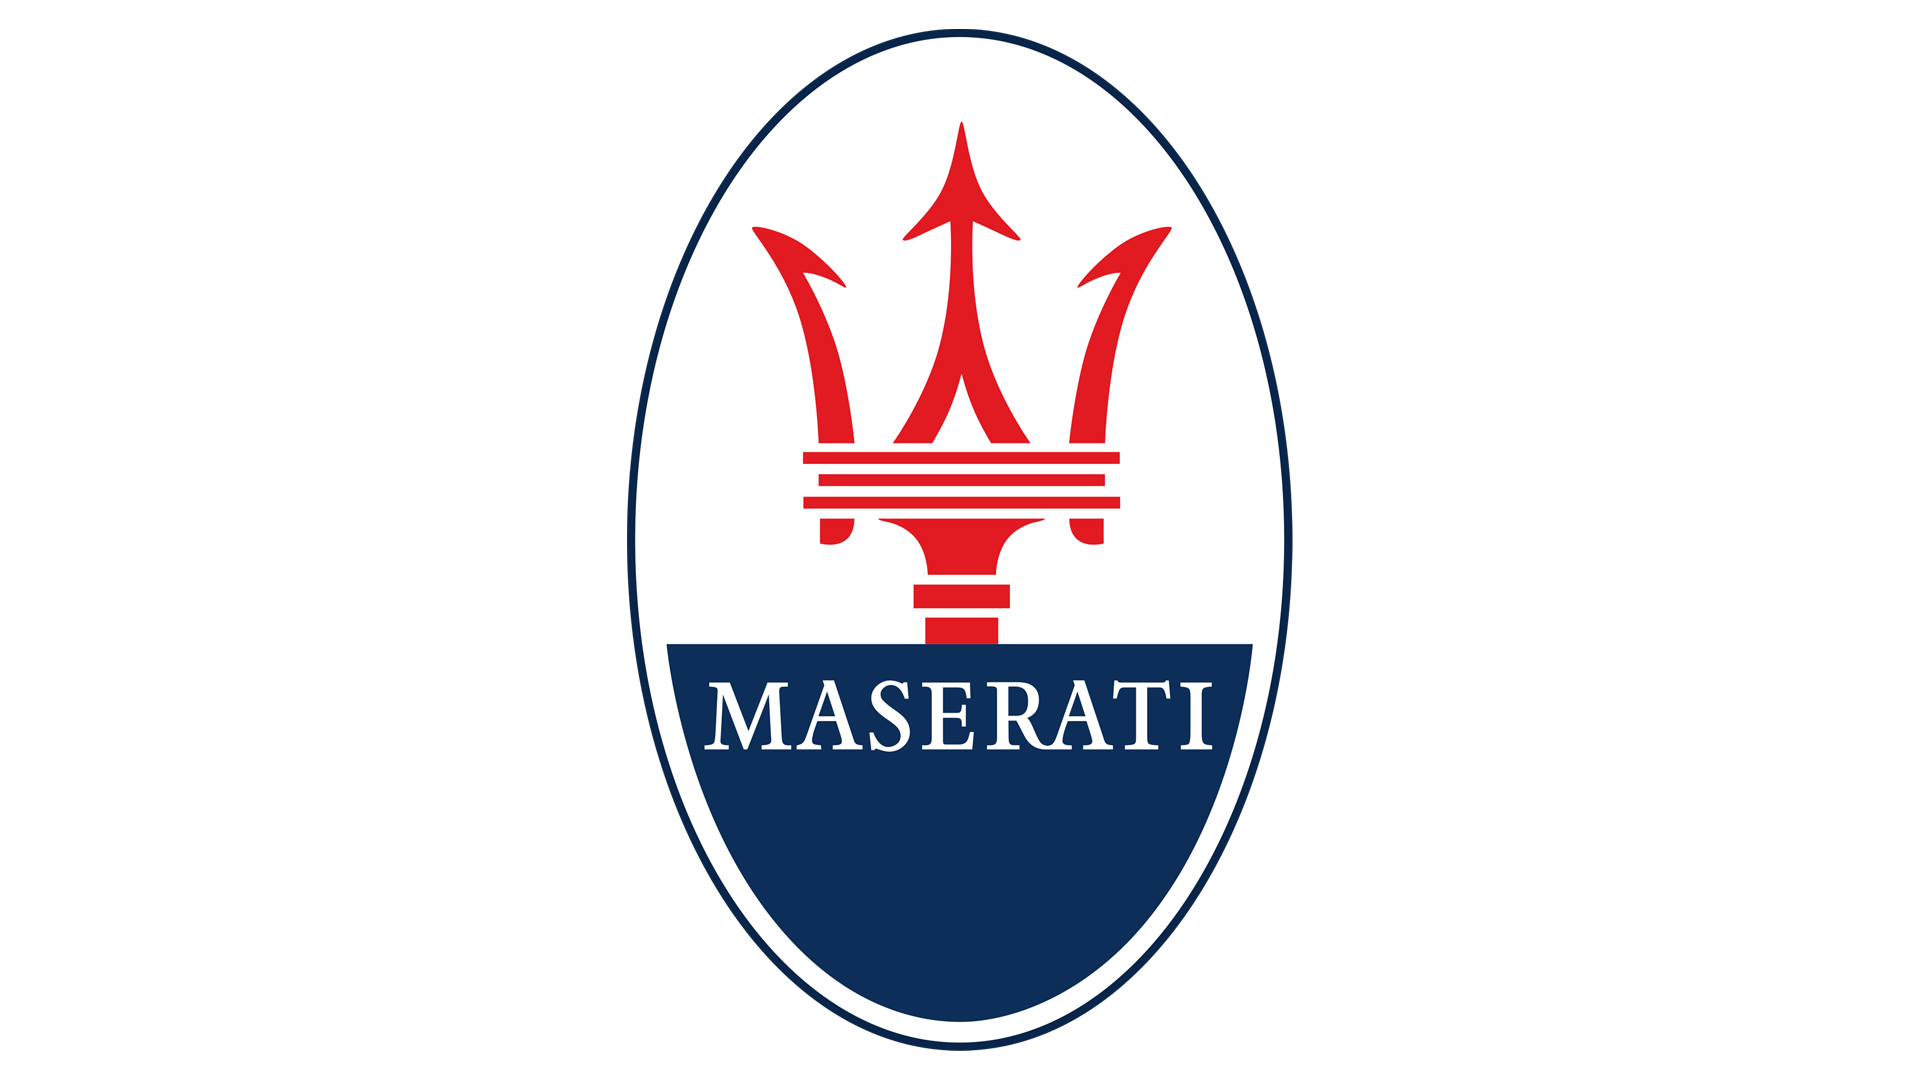 Maseratiu0027s 103 year histo